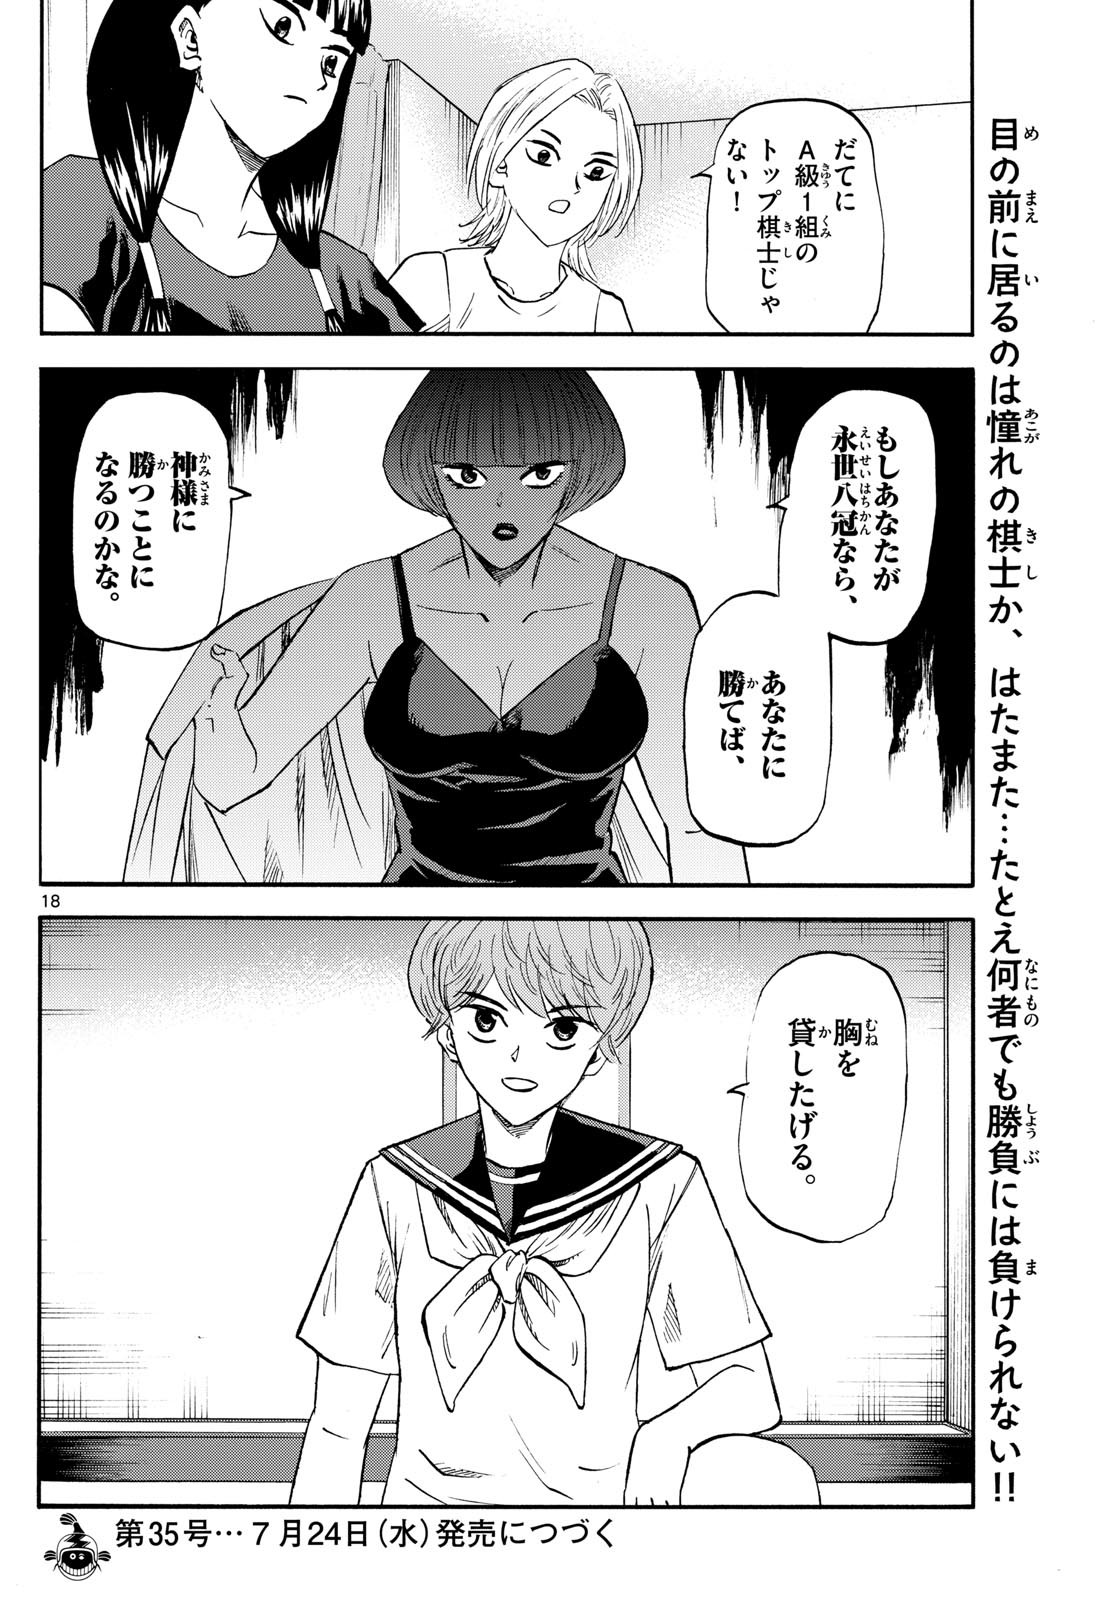 Ryu-to-Ichigo - Chapter 200 - Page 18